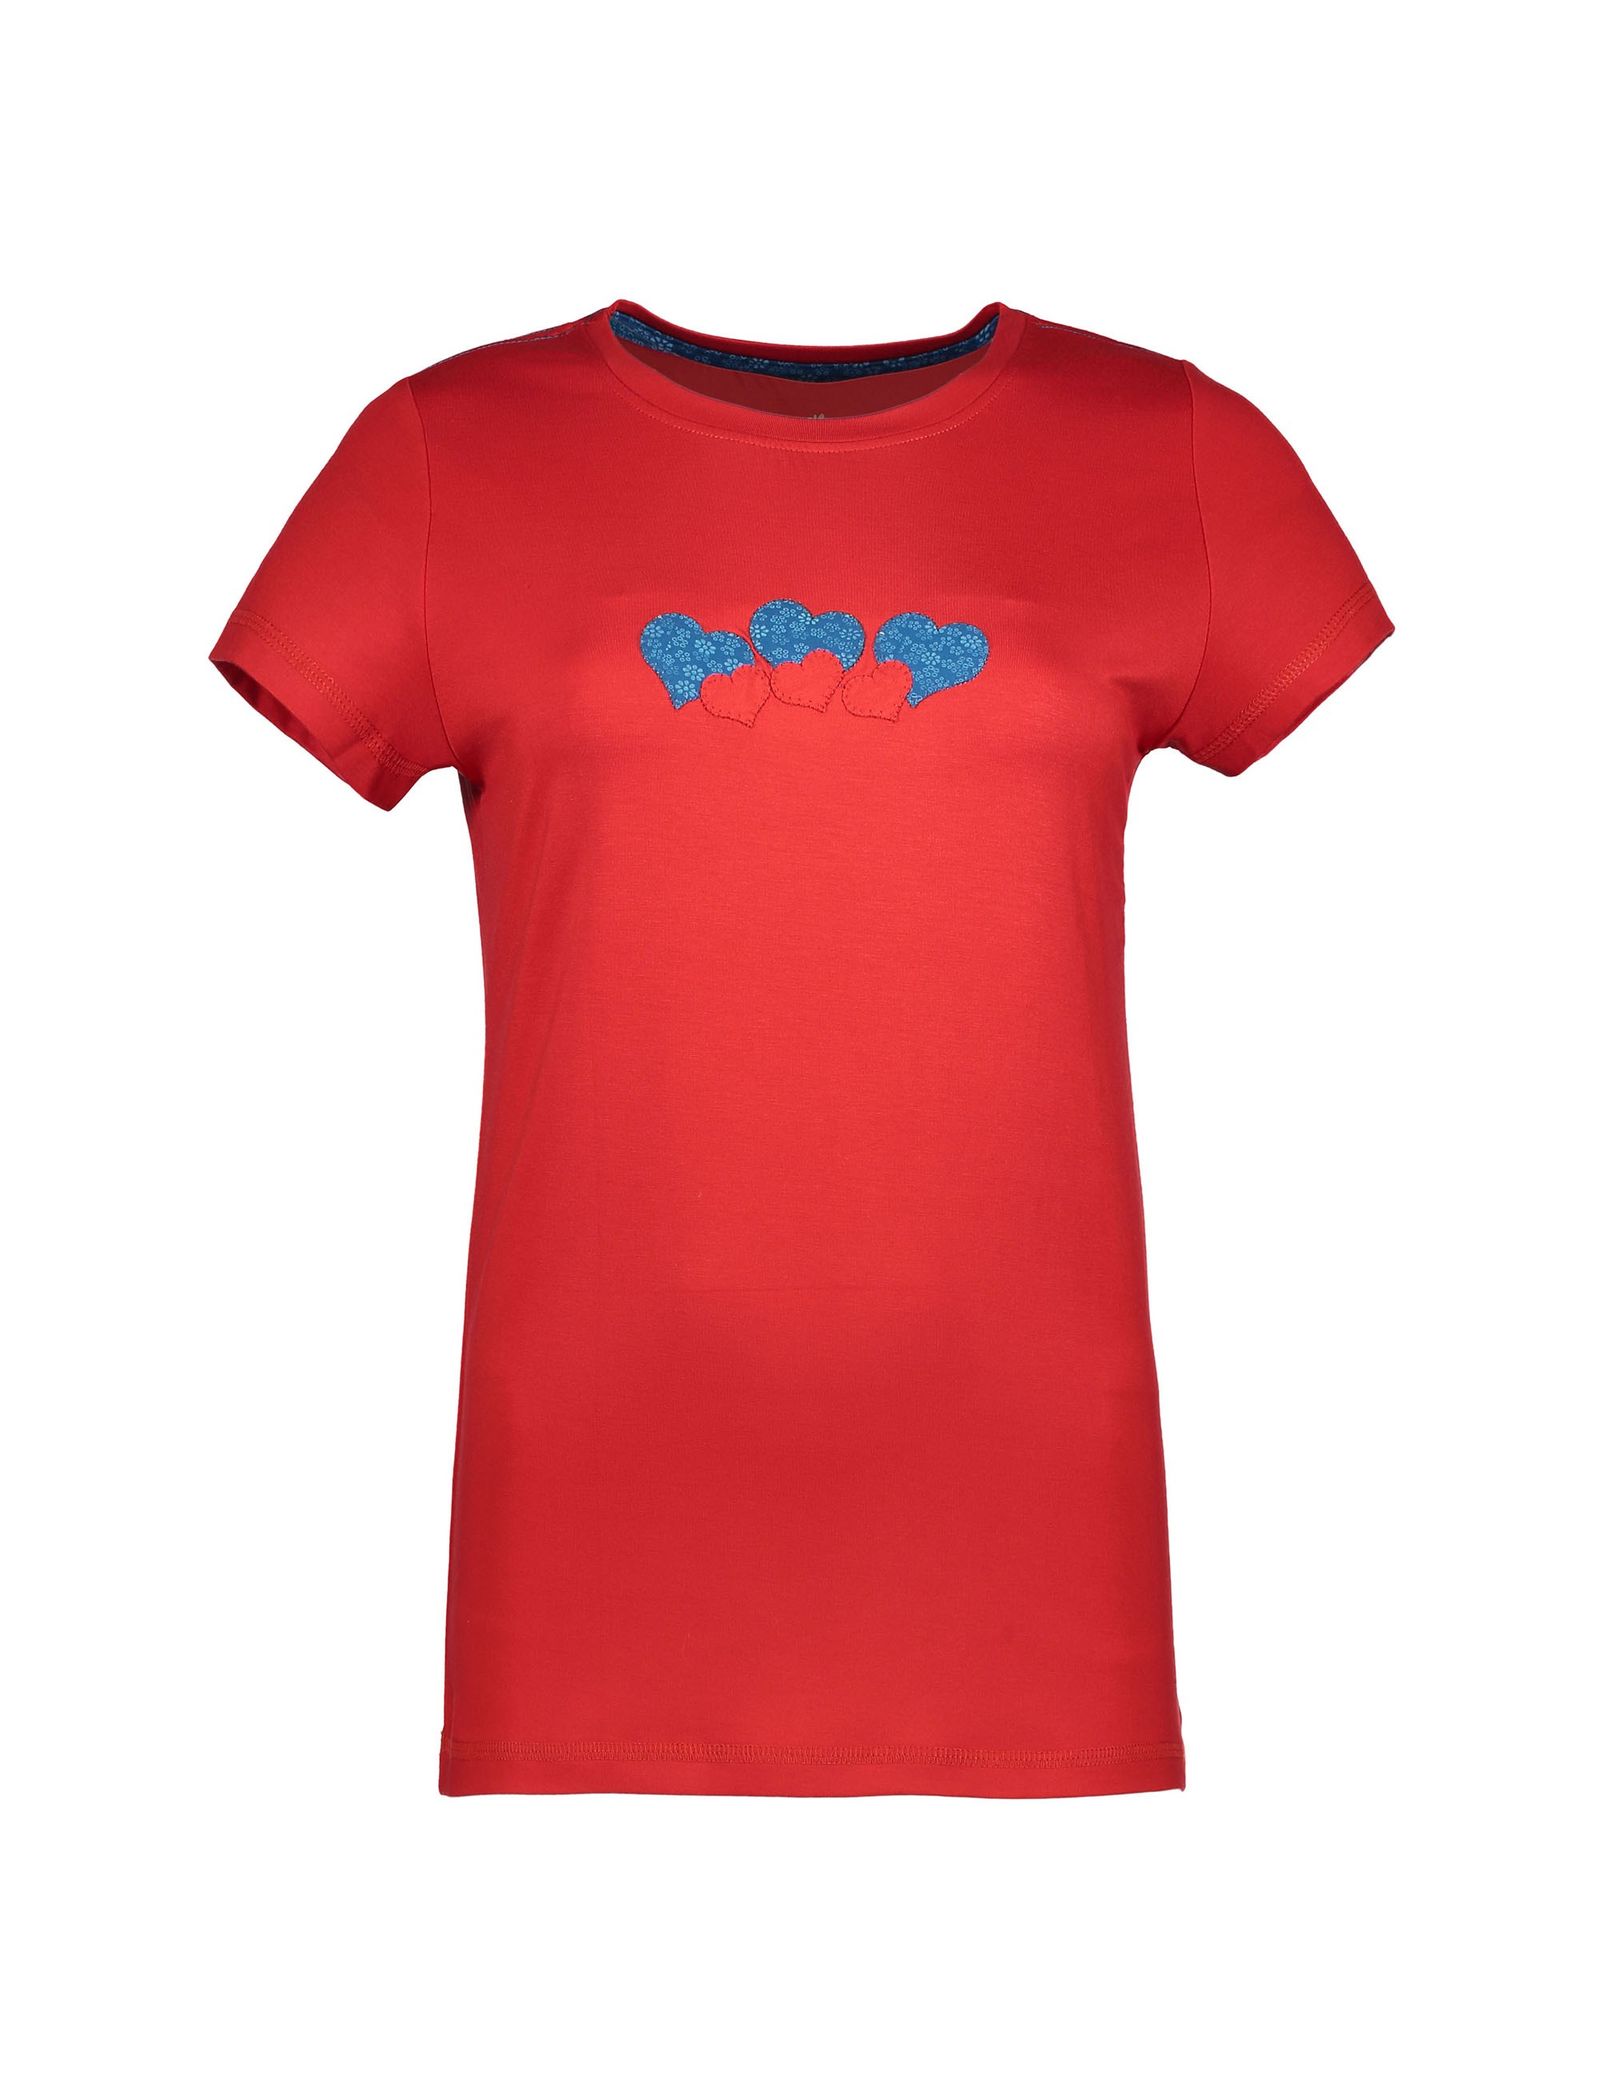 تی شرت و شلوار راحتی ویسکوز زنانه - ناربن - قرمز و آبي - 3